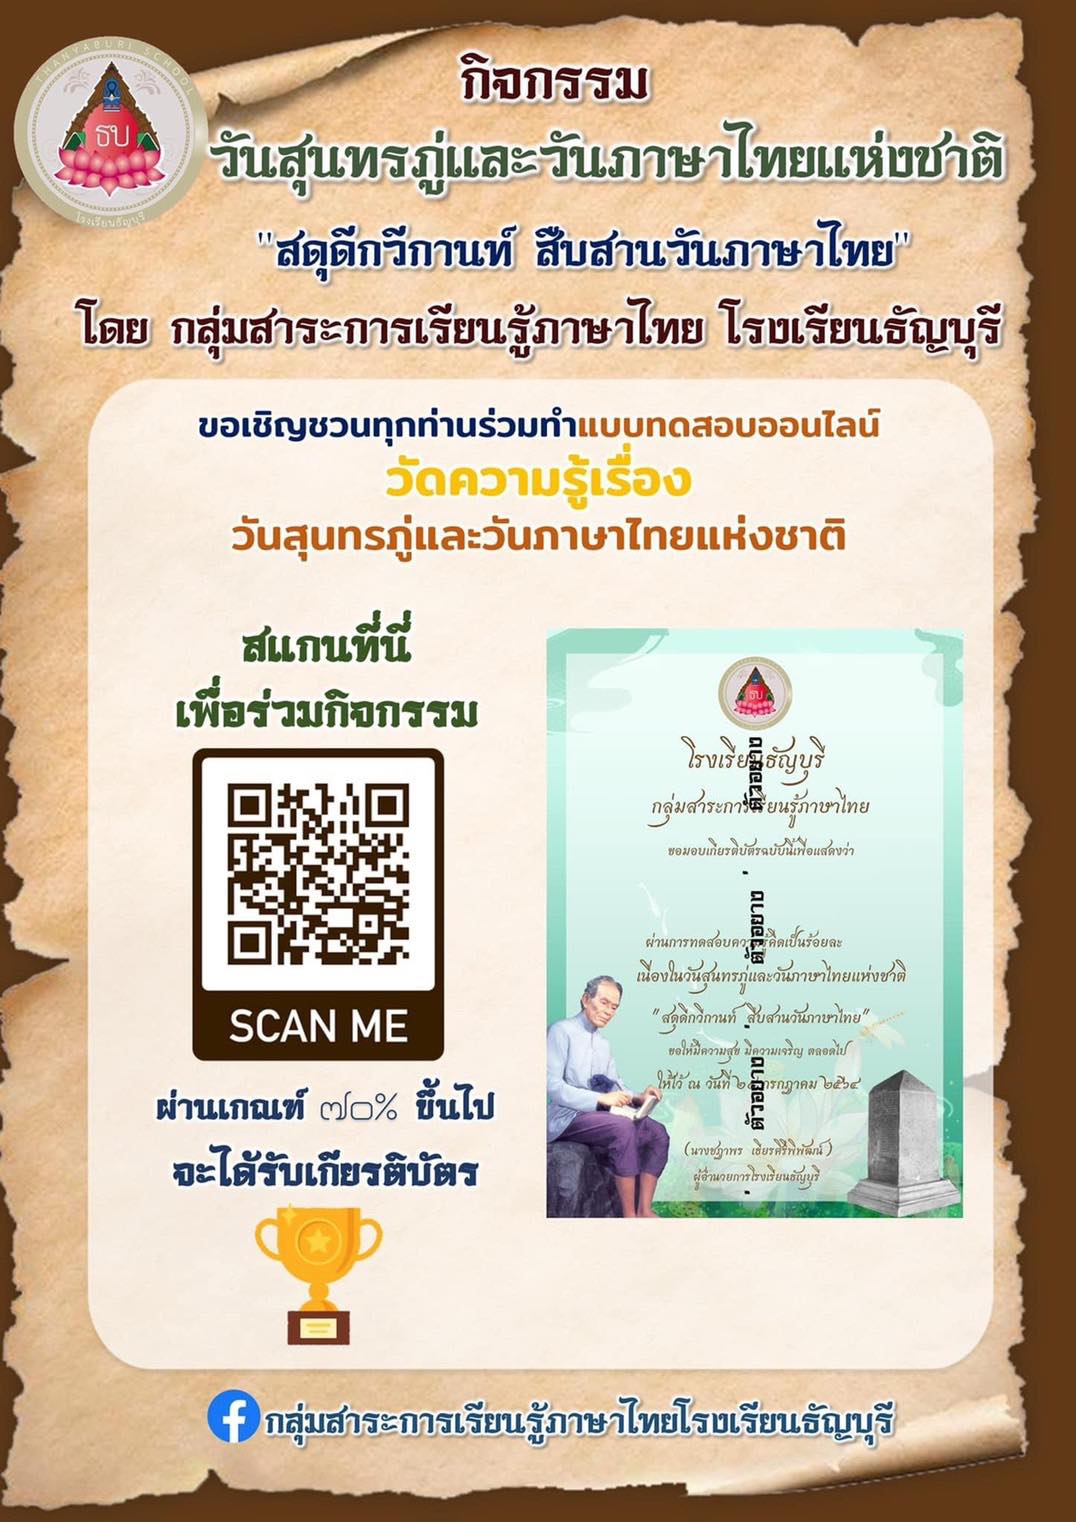 แบบทดสอบออนไลน์​  "สดุดี​กวีกานท์ สืบสานวันภาษาไทย" ประจำปีการศึกษา ๒๕๖๔ โดยกลุ่มสาระการเรียนรู้ภาษาไทย โรงเรียนธัญบุรี​